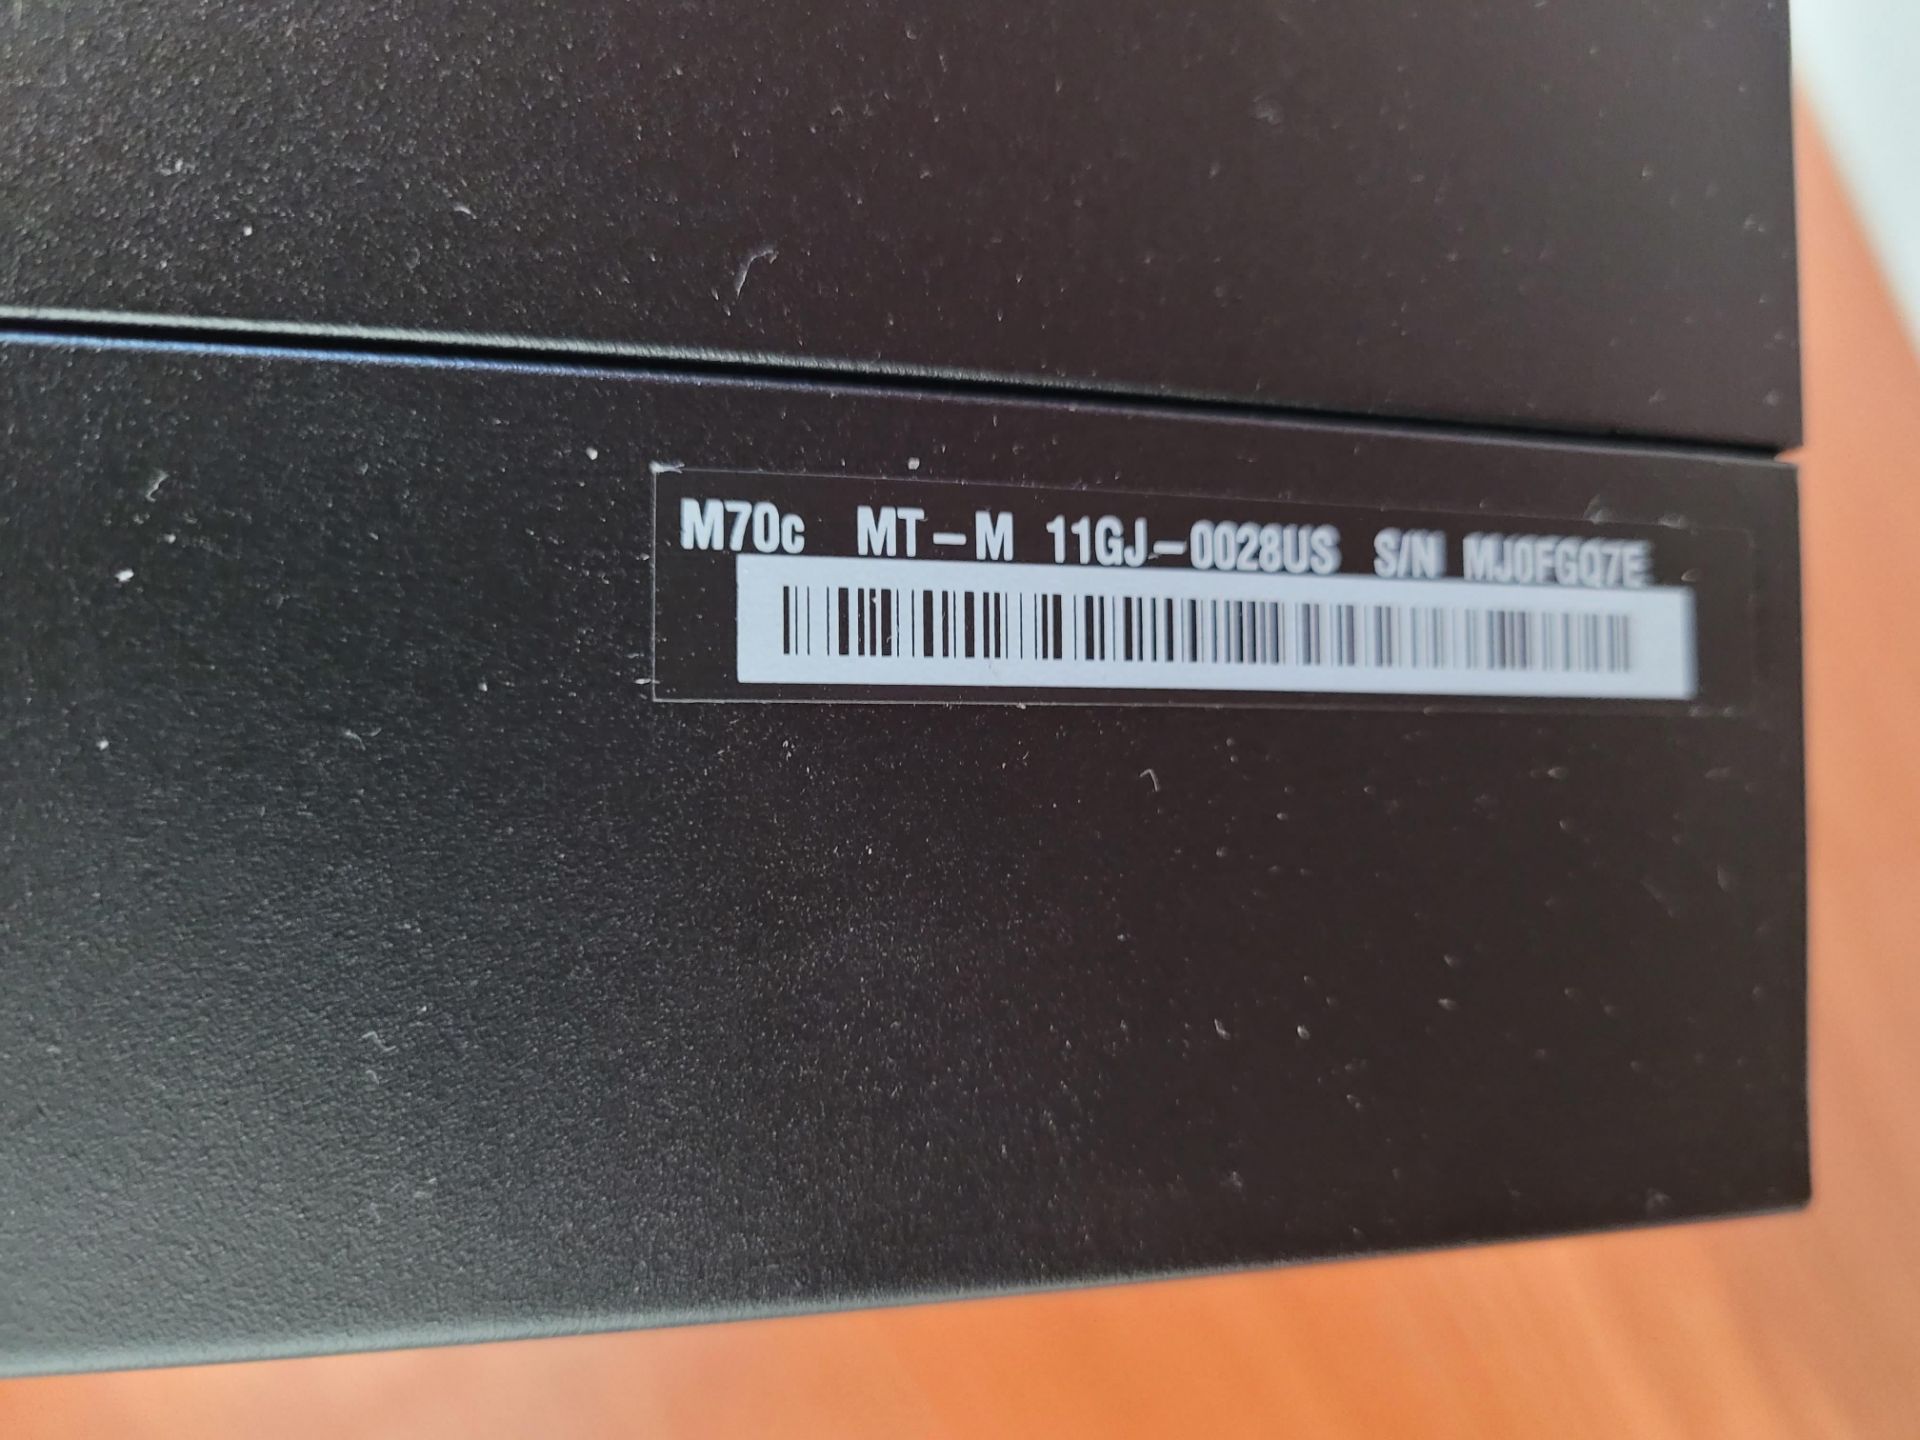 nearly-new THINKCENTRE Core i5 PC M70C MT (2) LG Monitors, LOGITECH MK545 wireless keyboard / mouse - Image 7 of 8